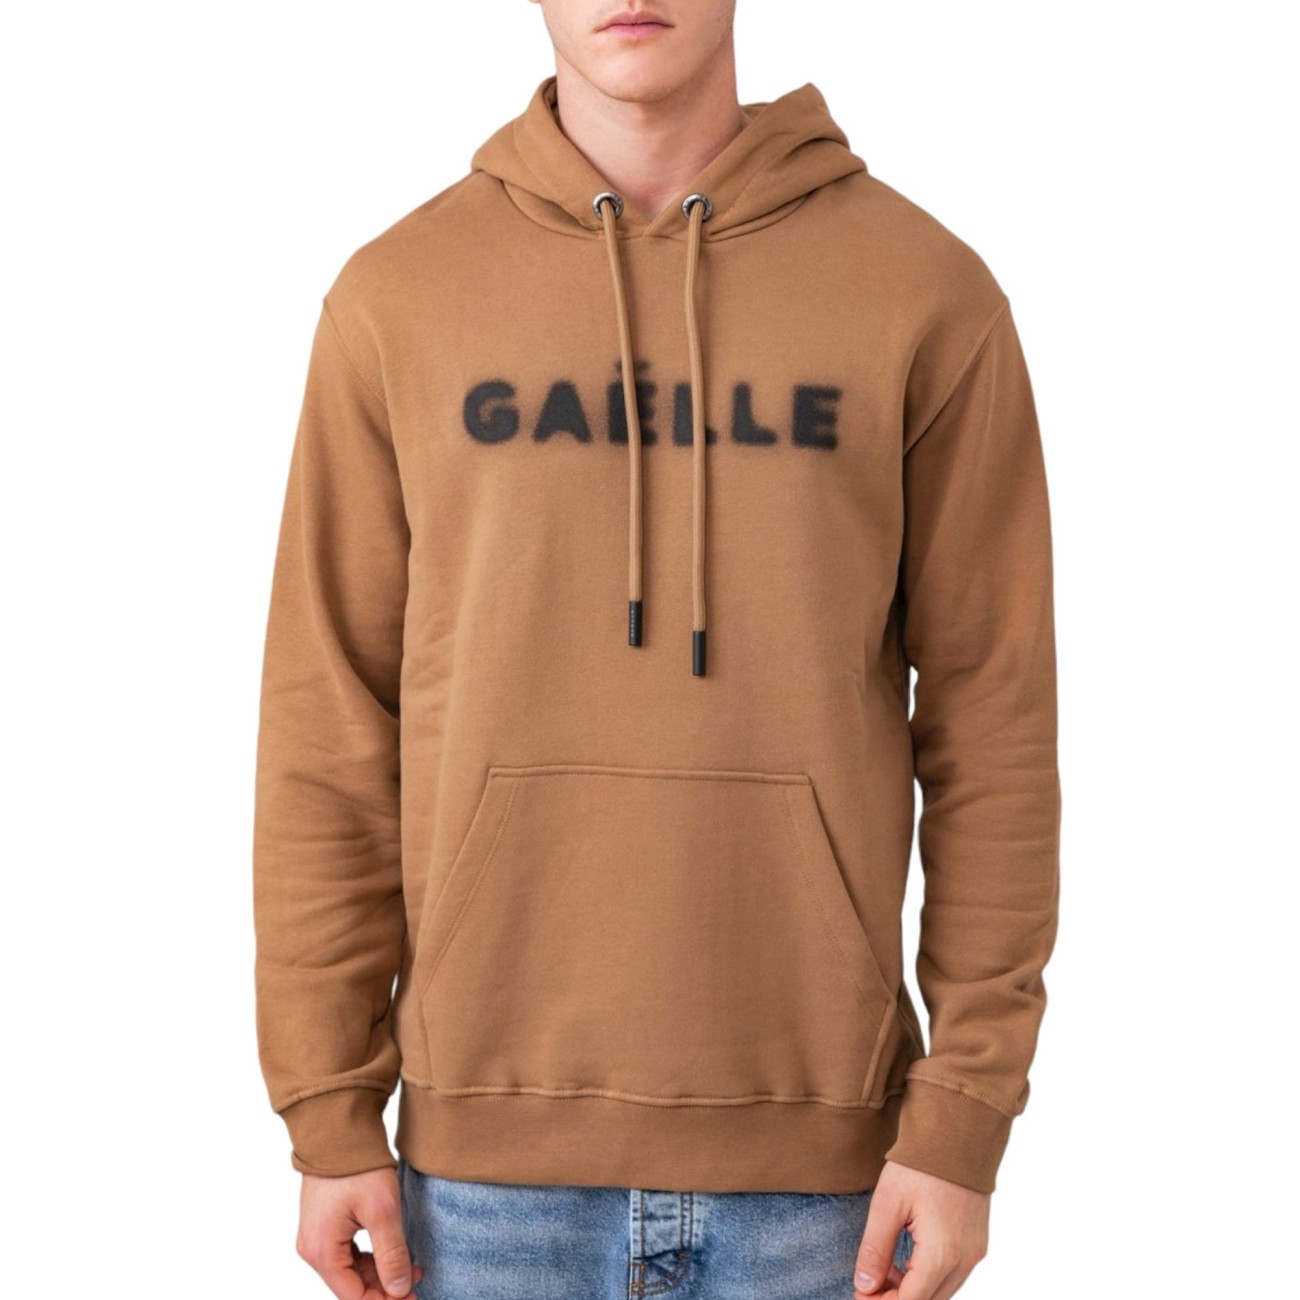 Gaelle brown hooded sweatshirt